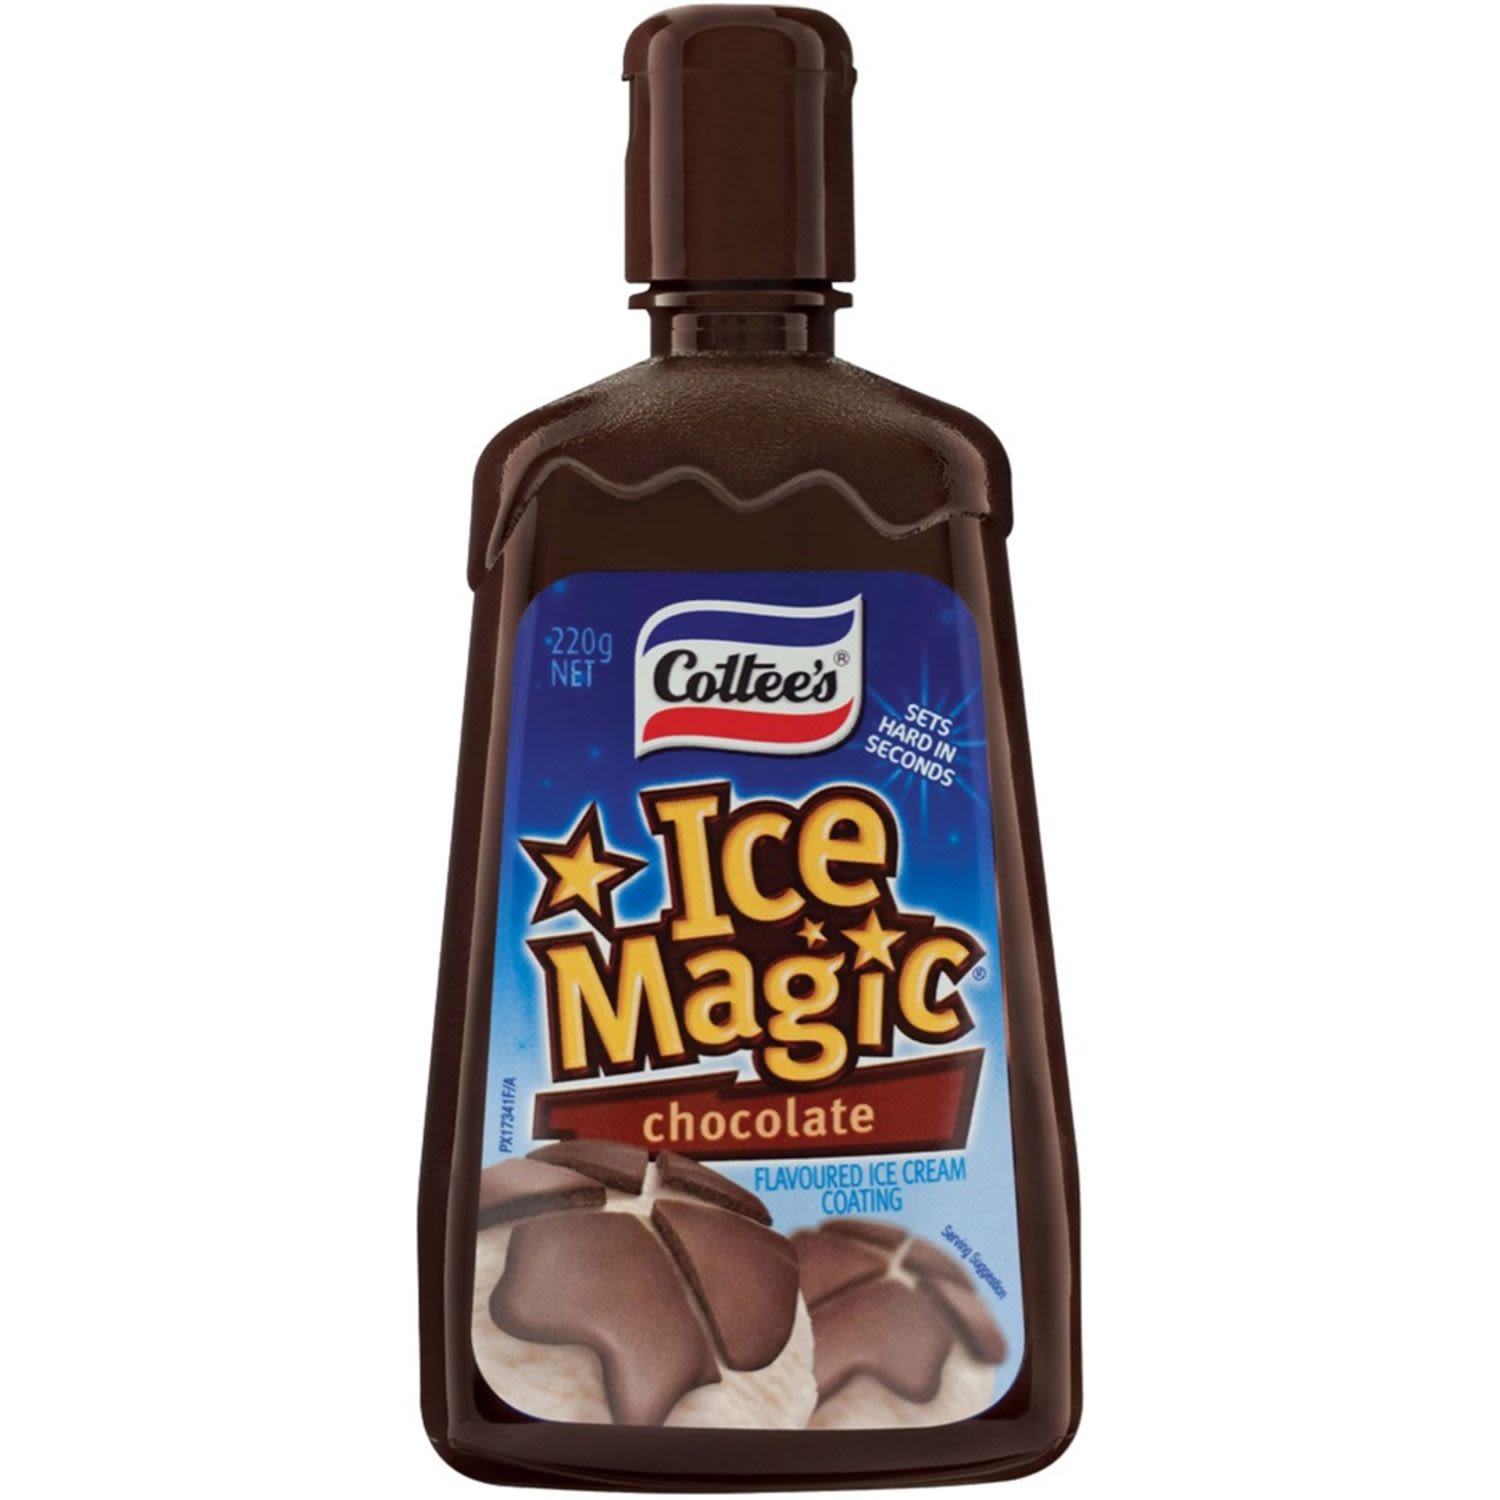 Cottee's Ice Magic Chocolate Ice Cream Topping, 220 Gram